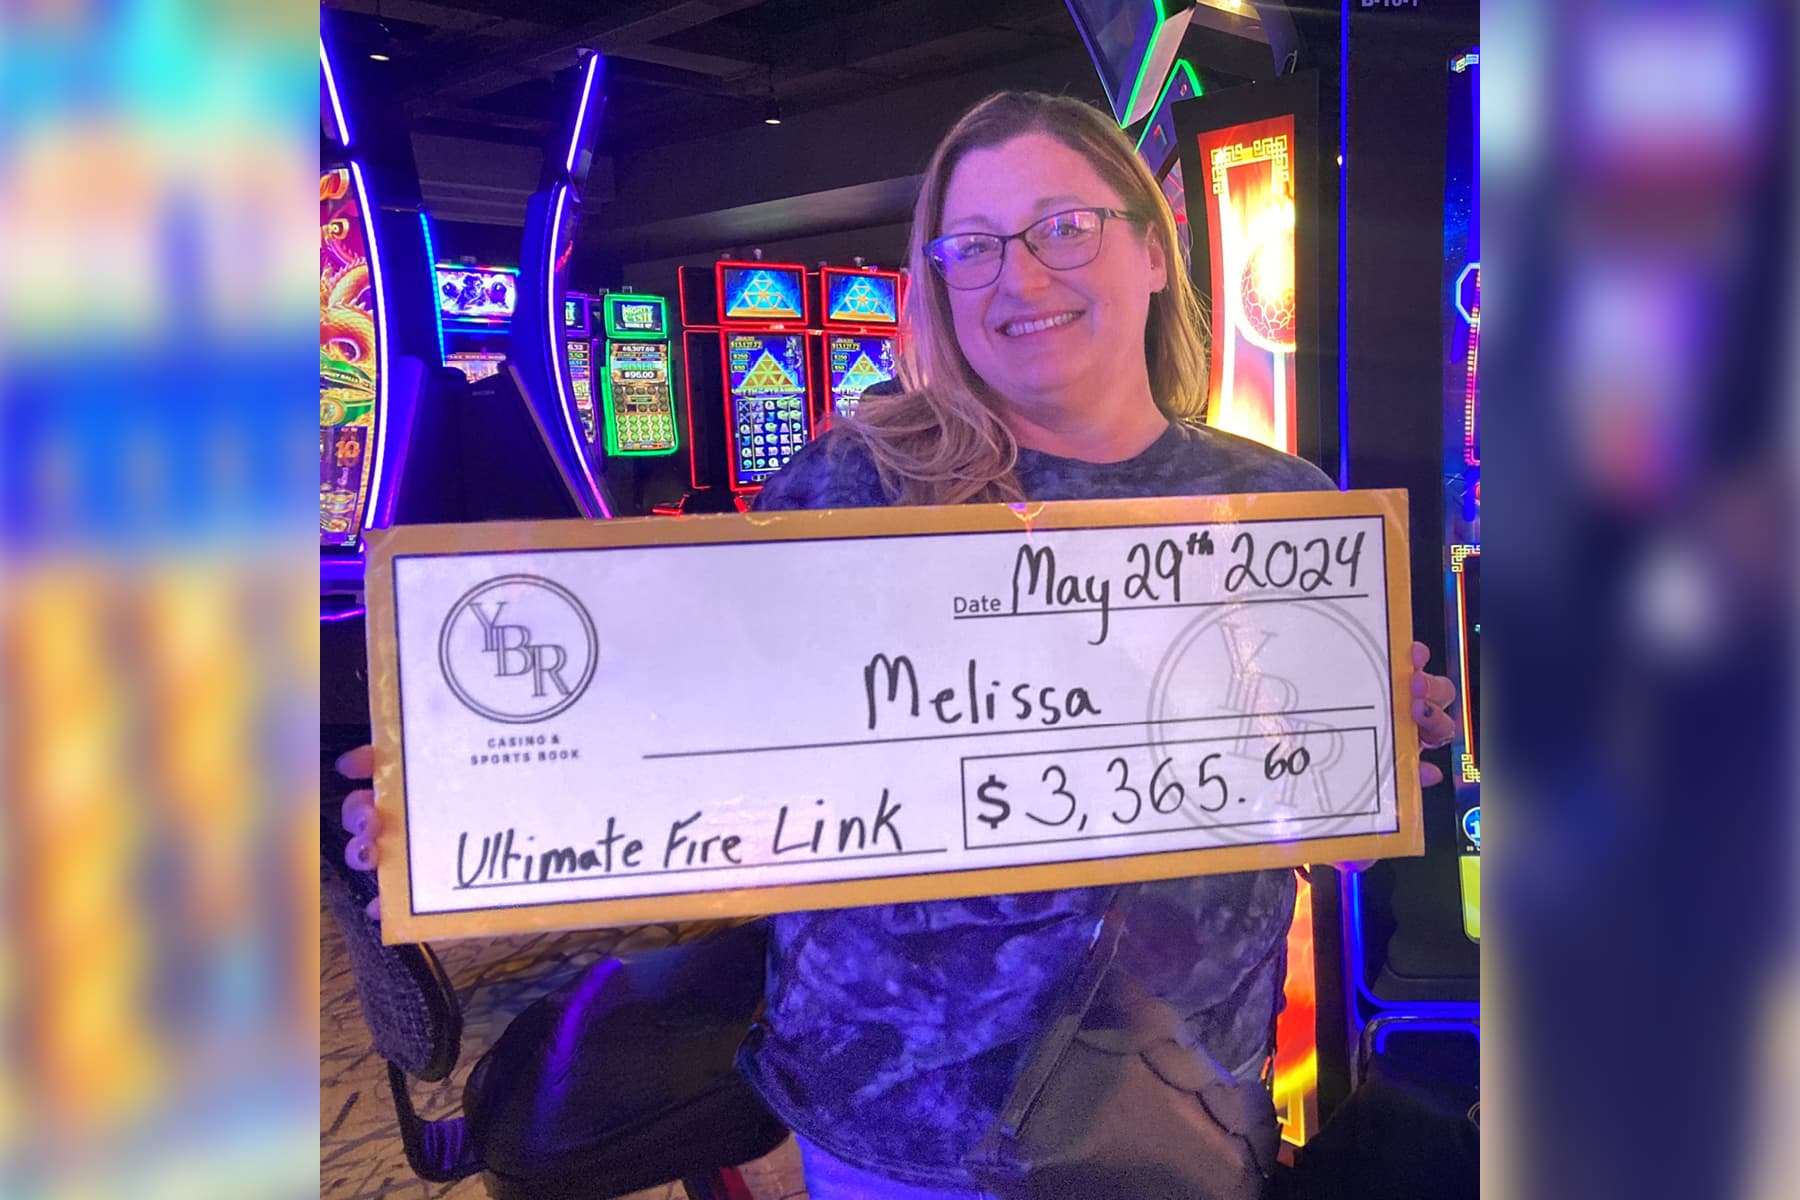 Melissa won $3,365